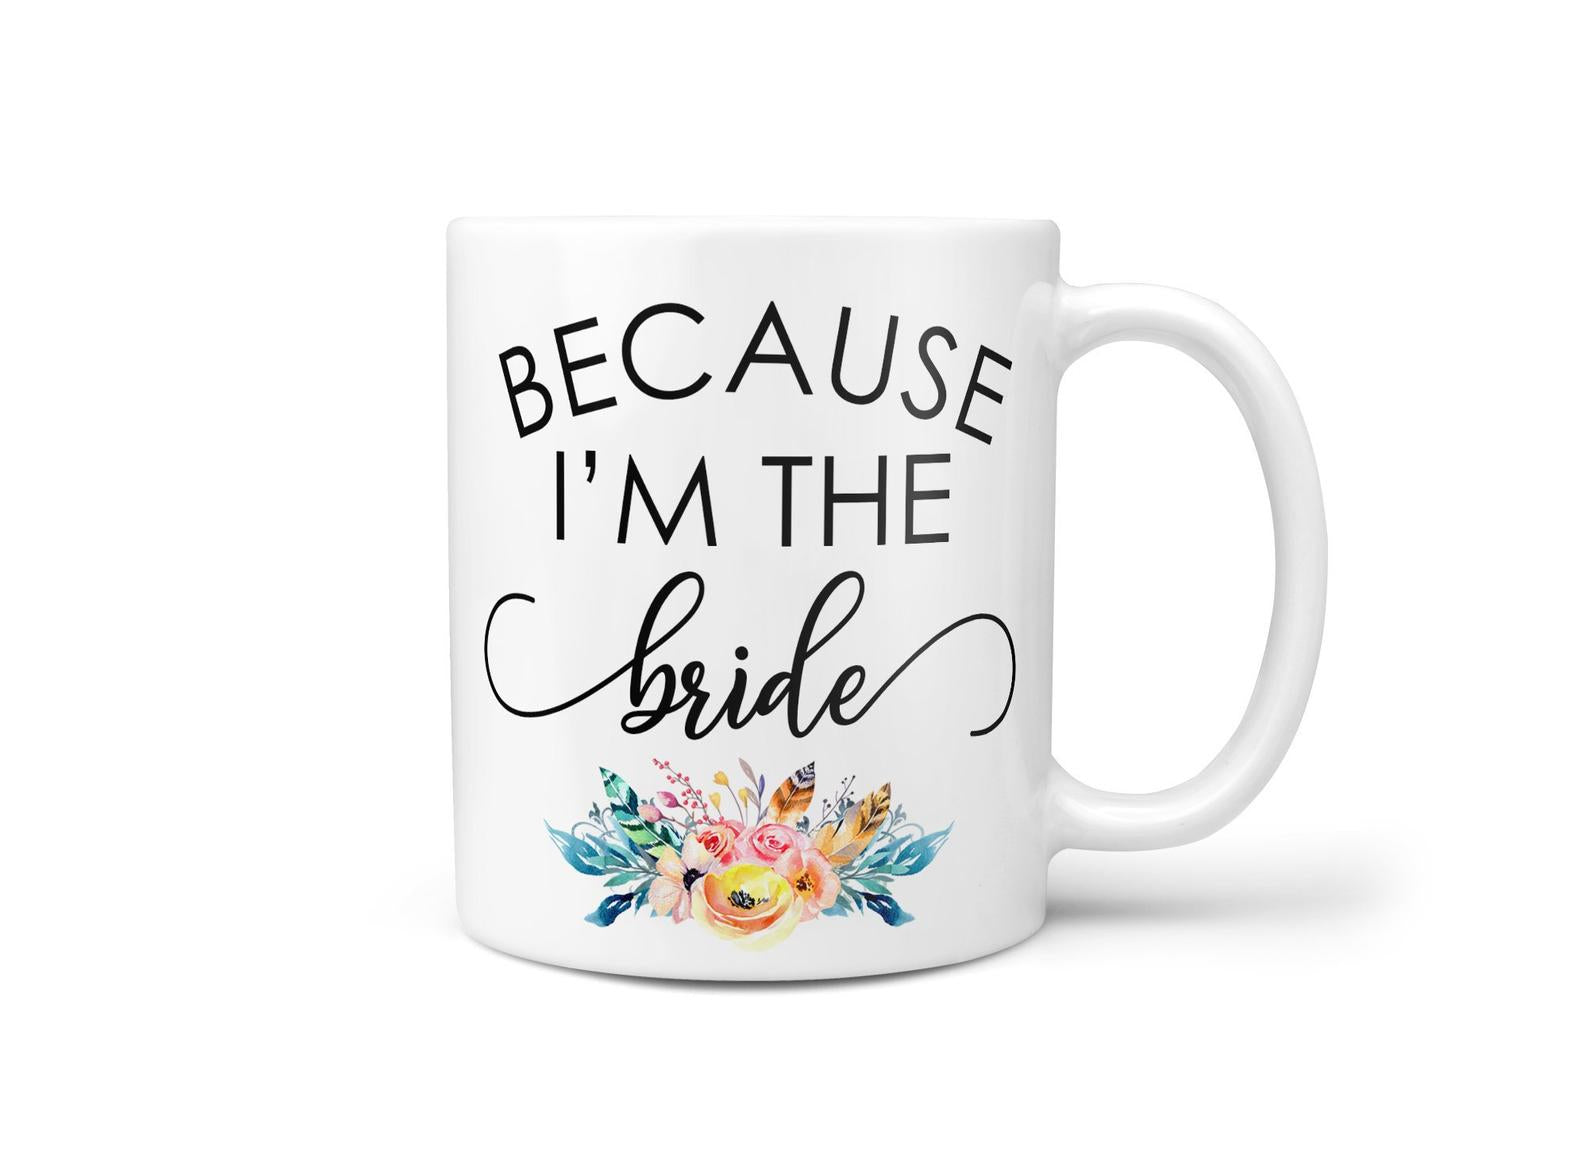 I'm the Bride Mug